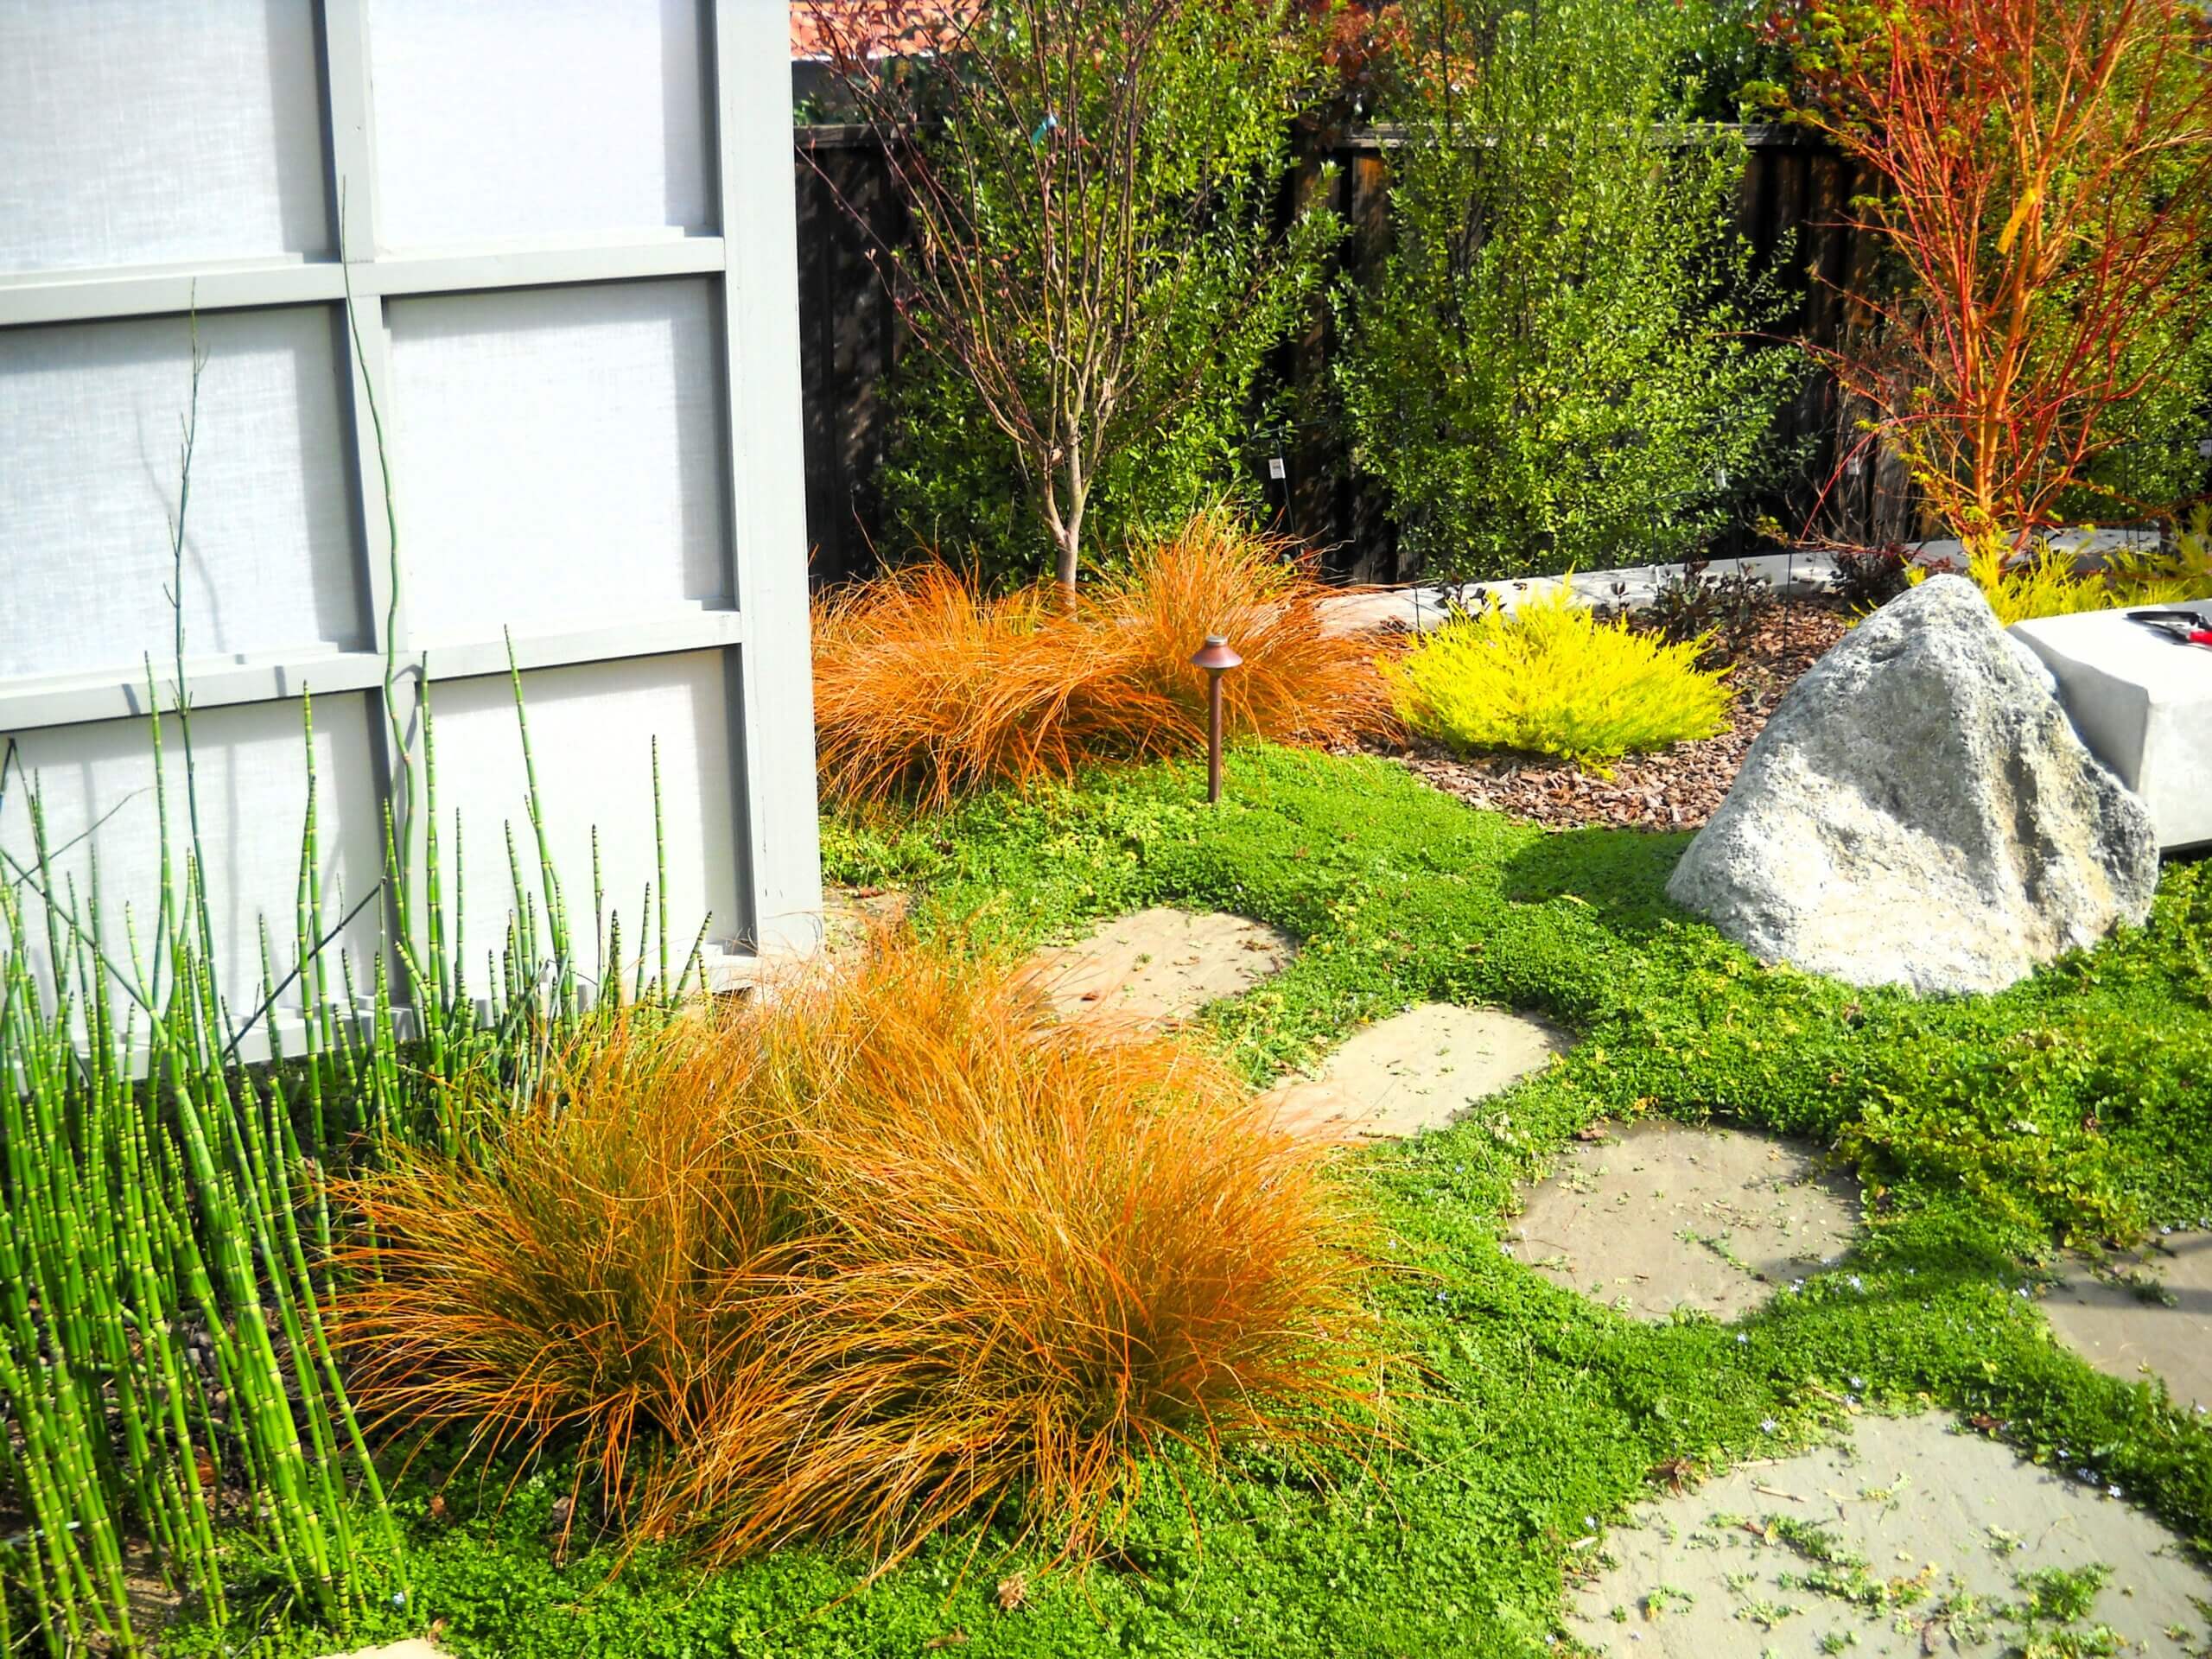 Natural stone pathway in a backyard zen garden with shoji screen